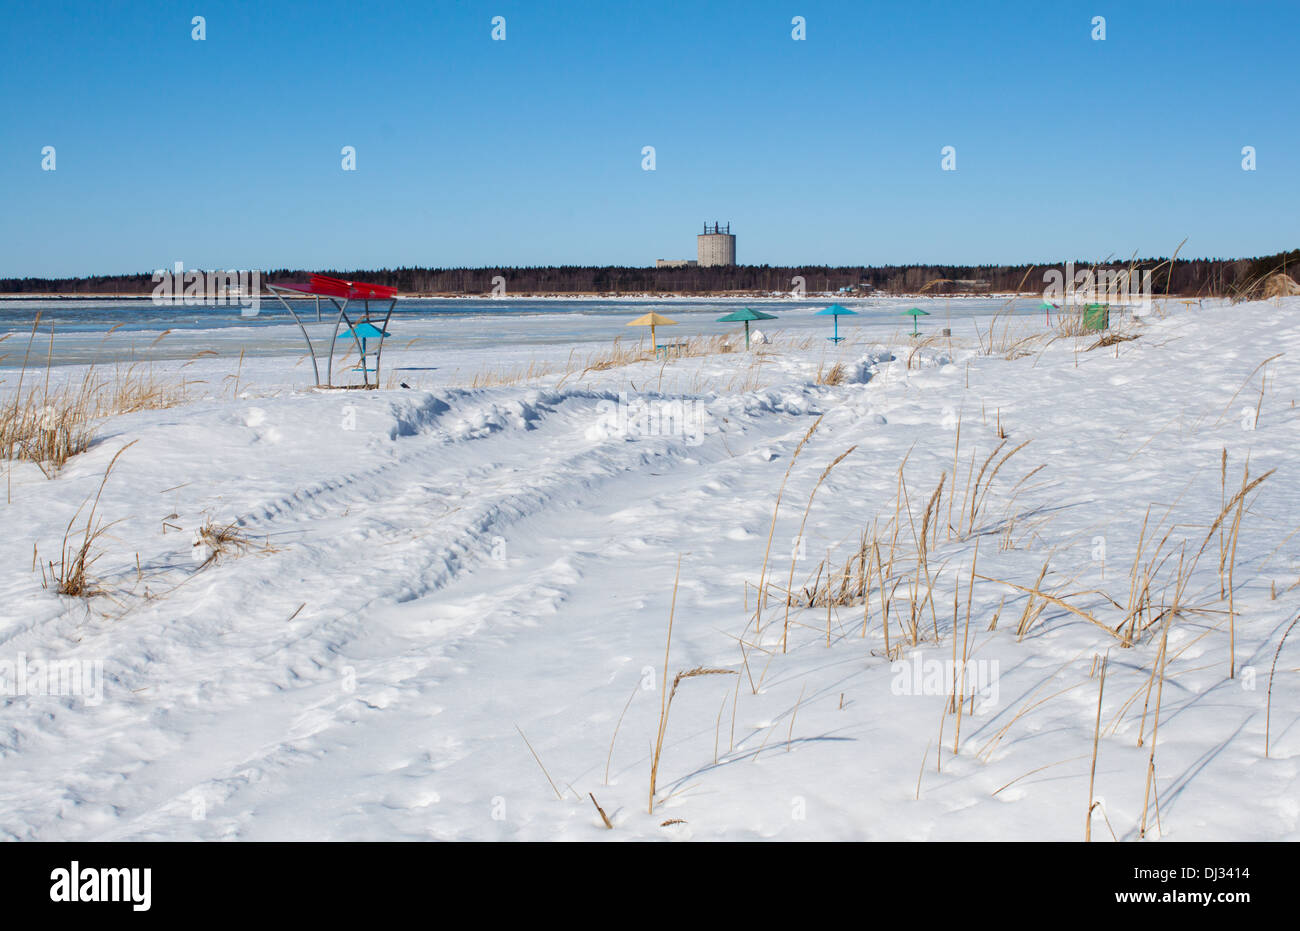 Plage gelée neige hiver ensoleillé jour personne skyline 'herbe' ciel bleu mer blanc Banque D'Images